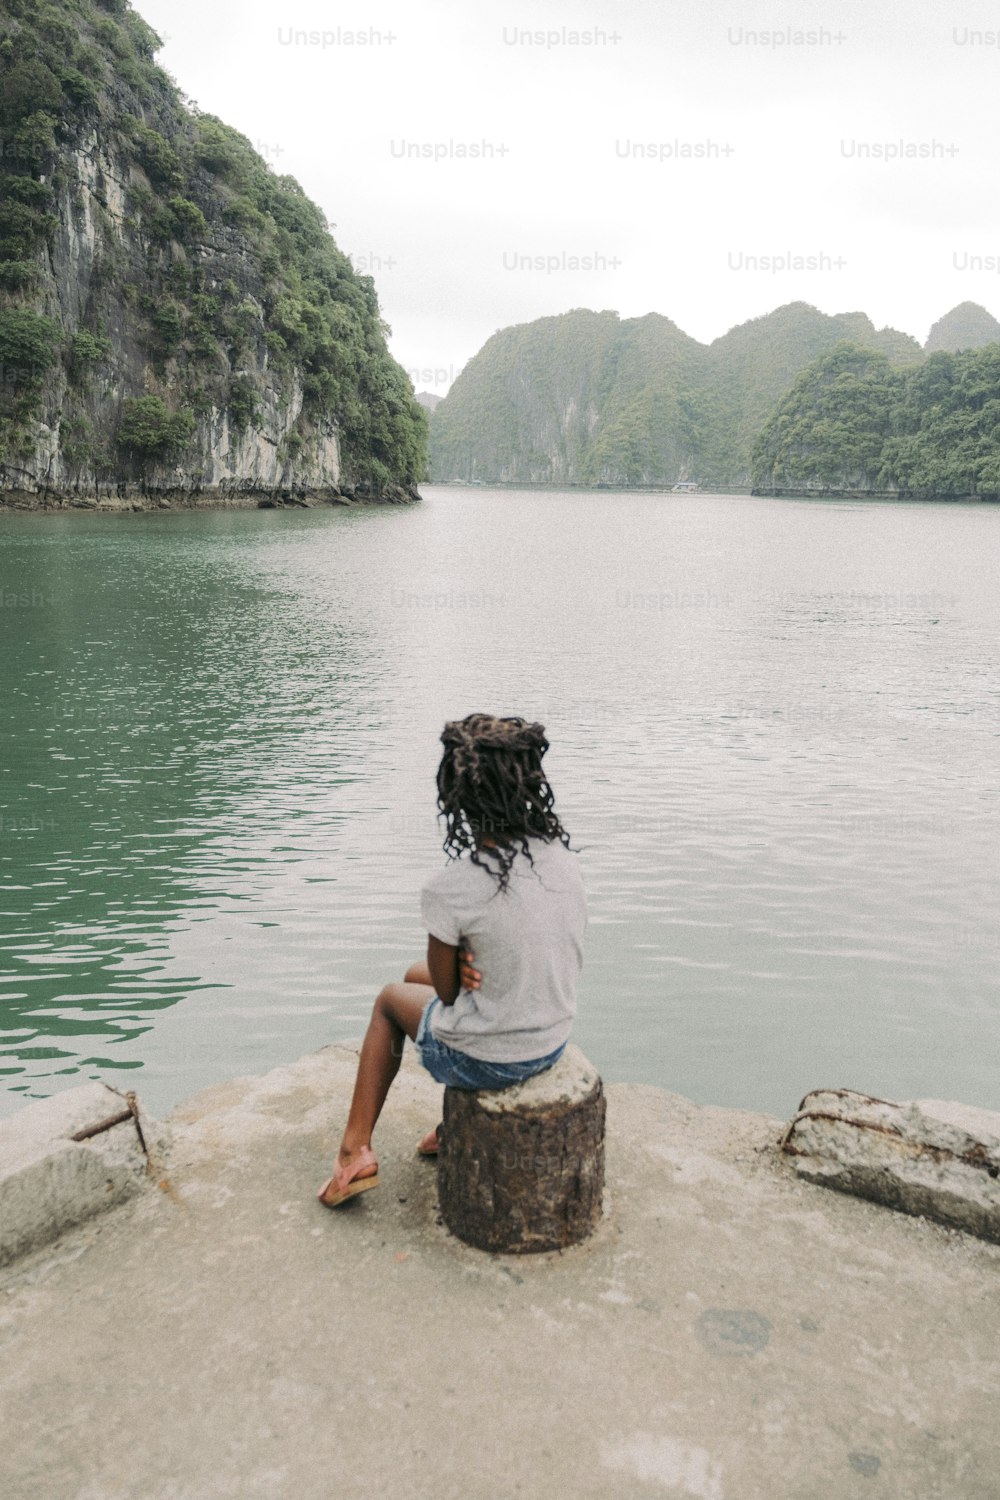 Una persona sentada en una roca cerca de un cuerpo de agua